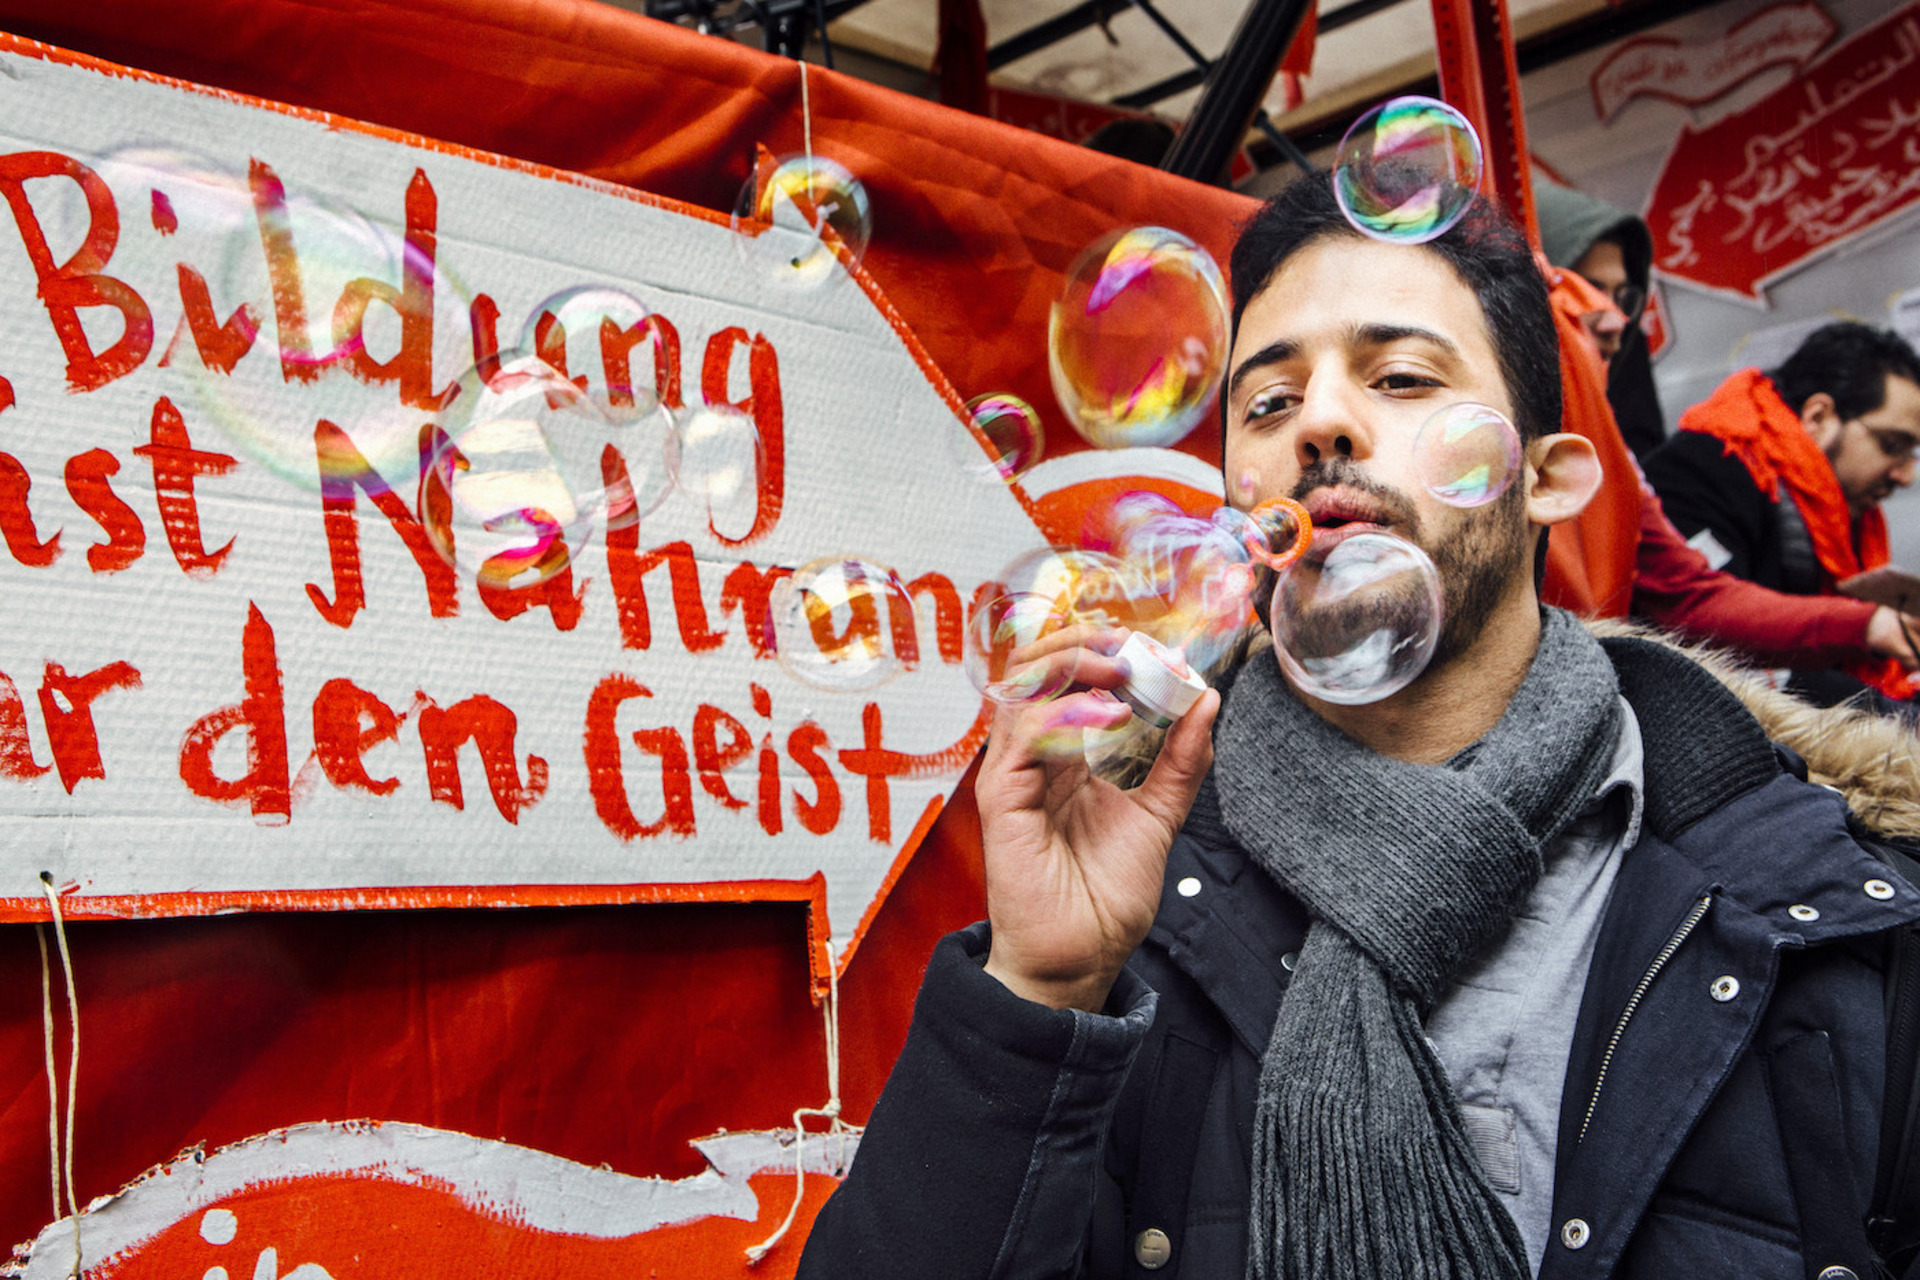 Ein Mann macht Seifenblasen vor einem Plakat mit den Worten "Bildung ist Nahrung für den Geist"